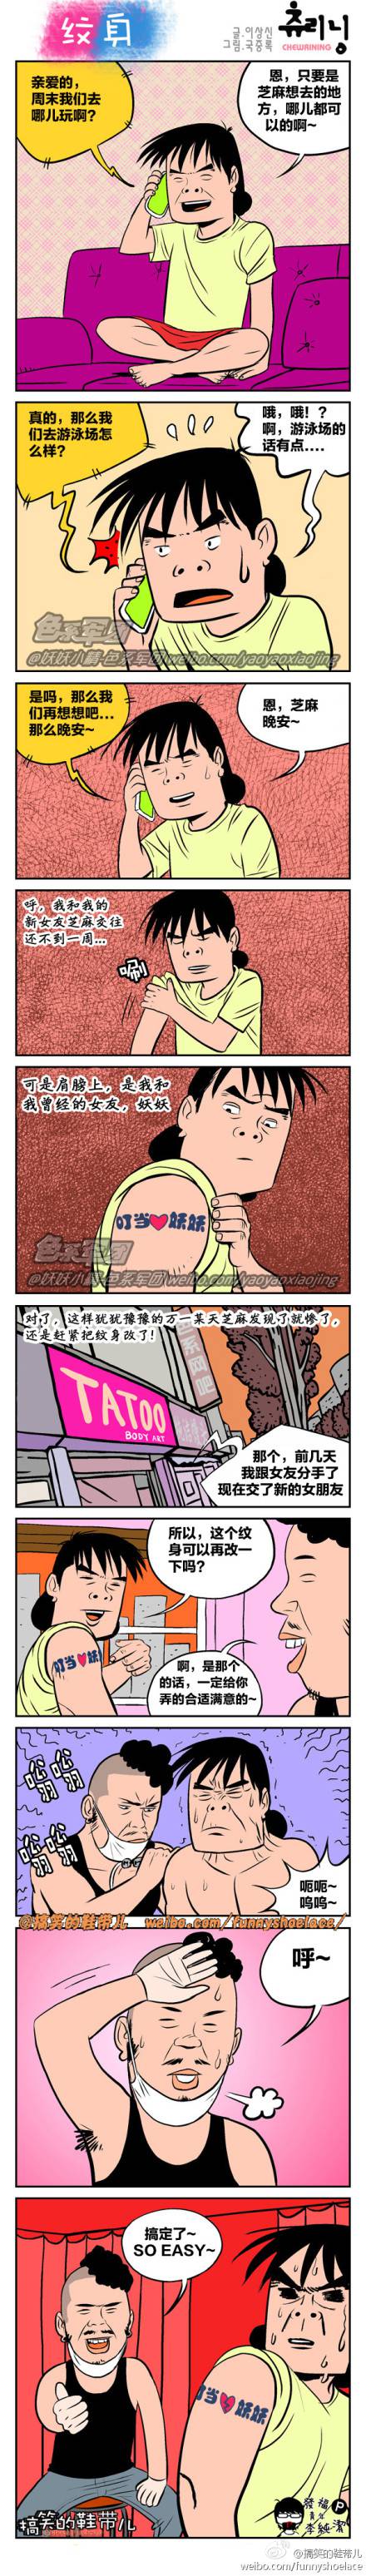 邪恶漫画爆笑囧图第43刊：海神的捉弄